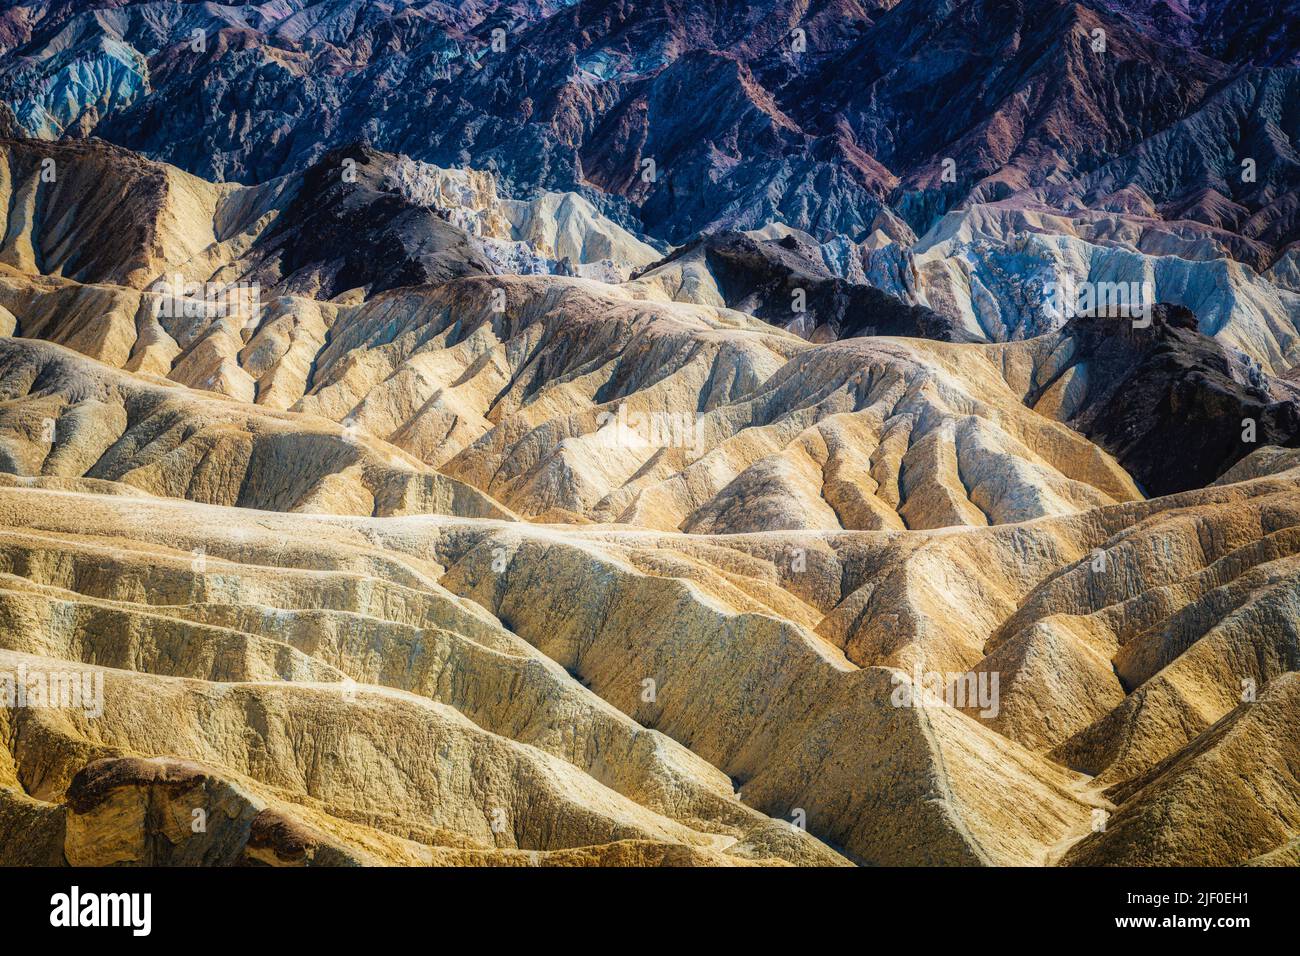 Las formaciones erosionadas en los bordes del Parque Nacional del Valle de la Muerte, California. Foto de stock